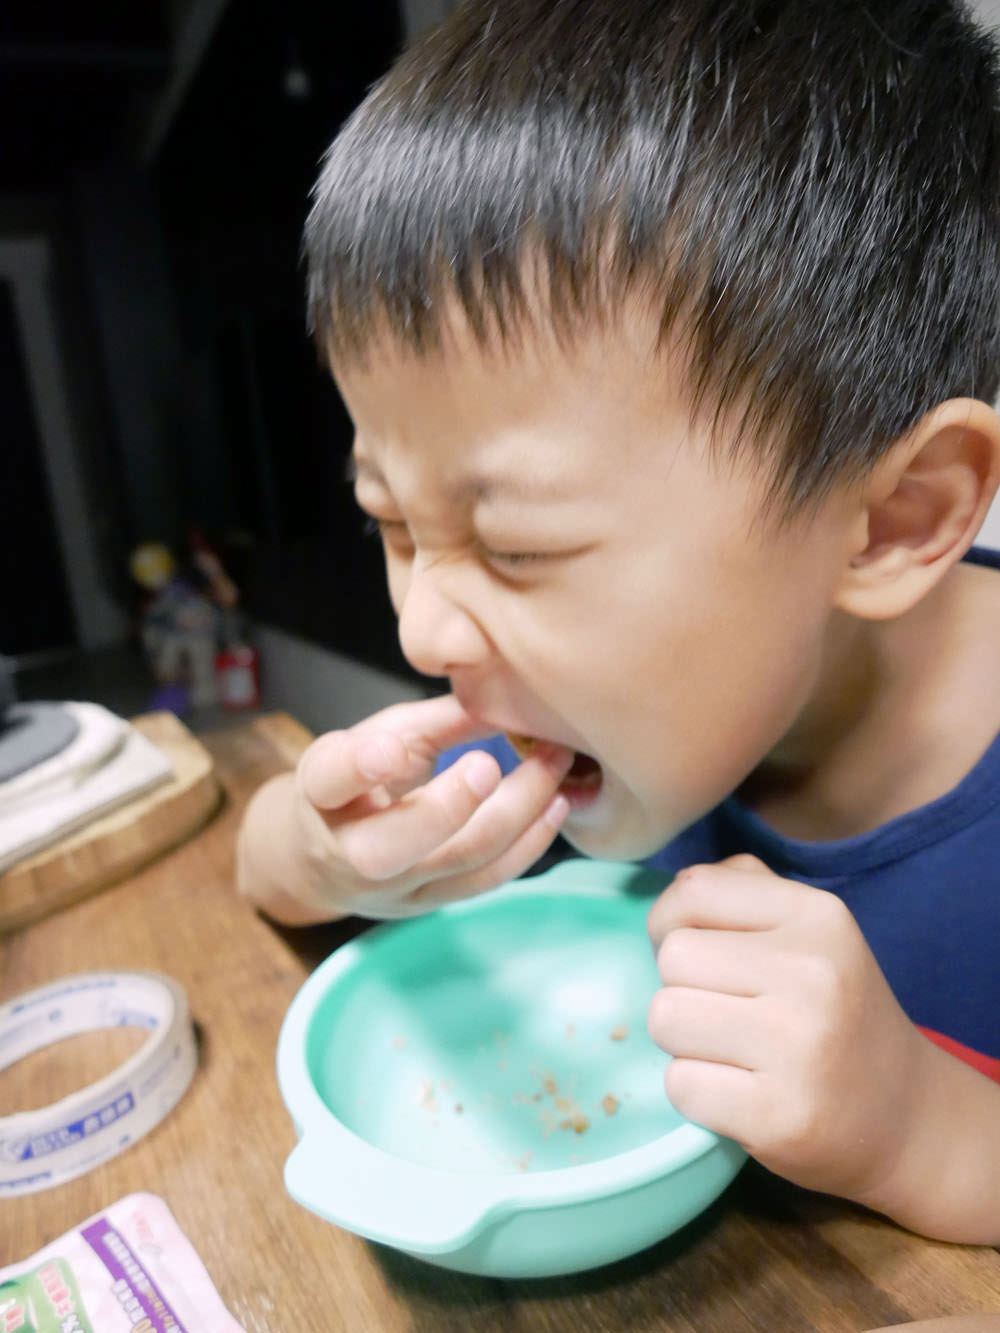 [啾團] Hakuna好可娜手工鮪魚鬆/豬肉鬆蛋捲讓人好吃到一口接一口!就連小孩都可以安心吃的超好吃蛋捲(加開U-May 無添加系列-優妹黑醋栗凍)